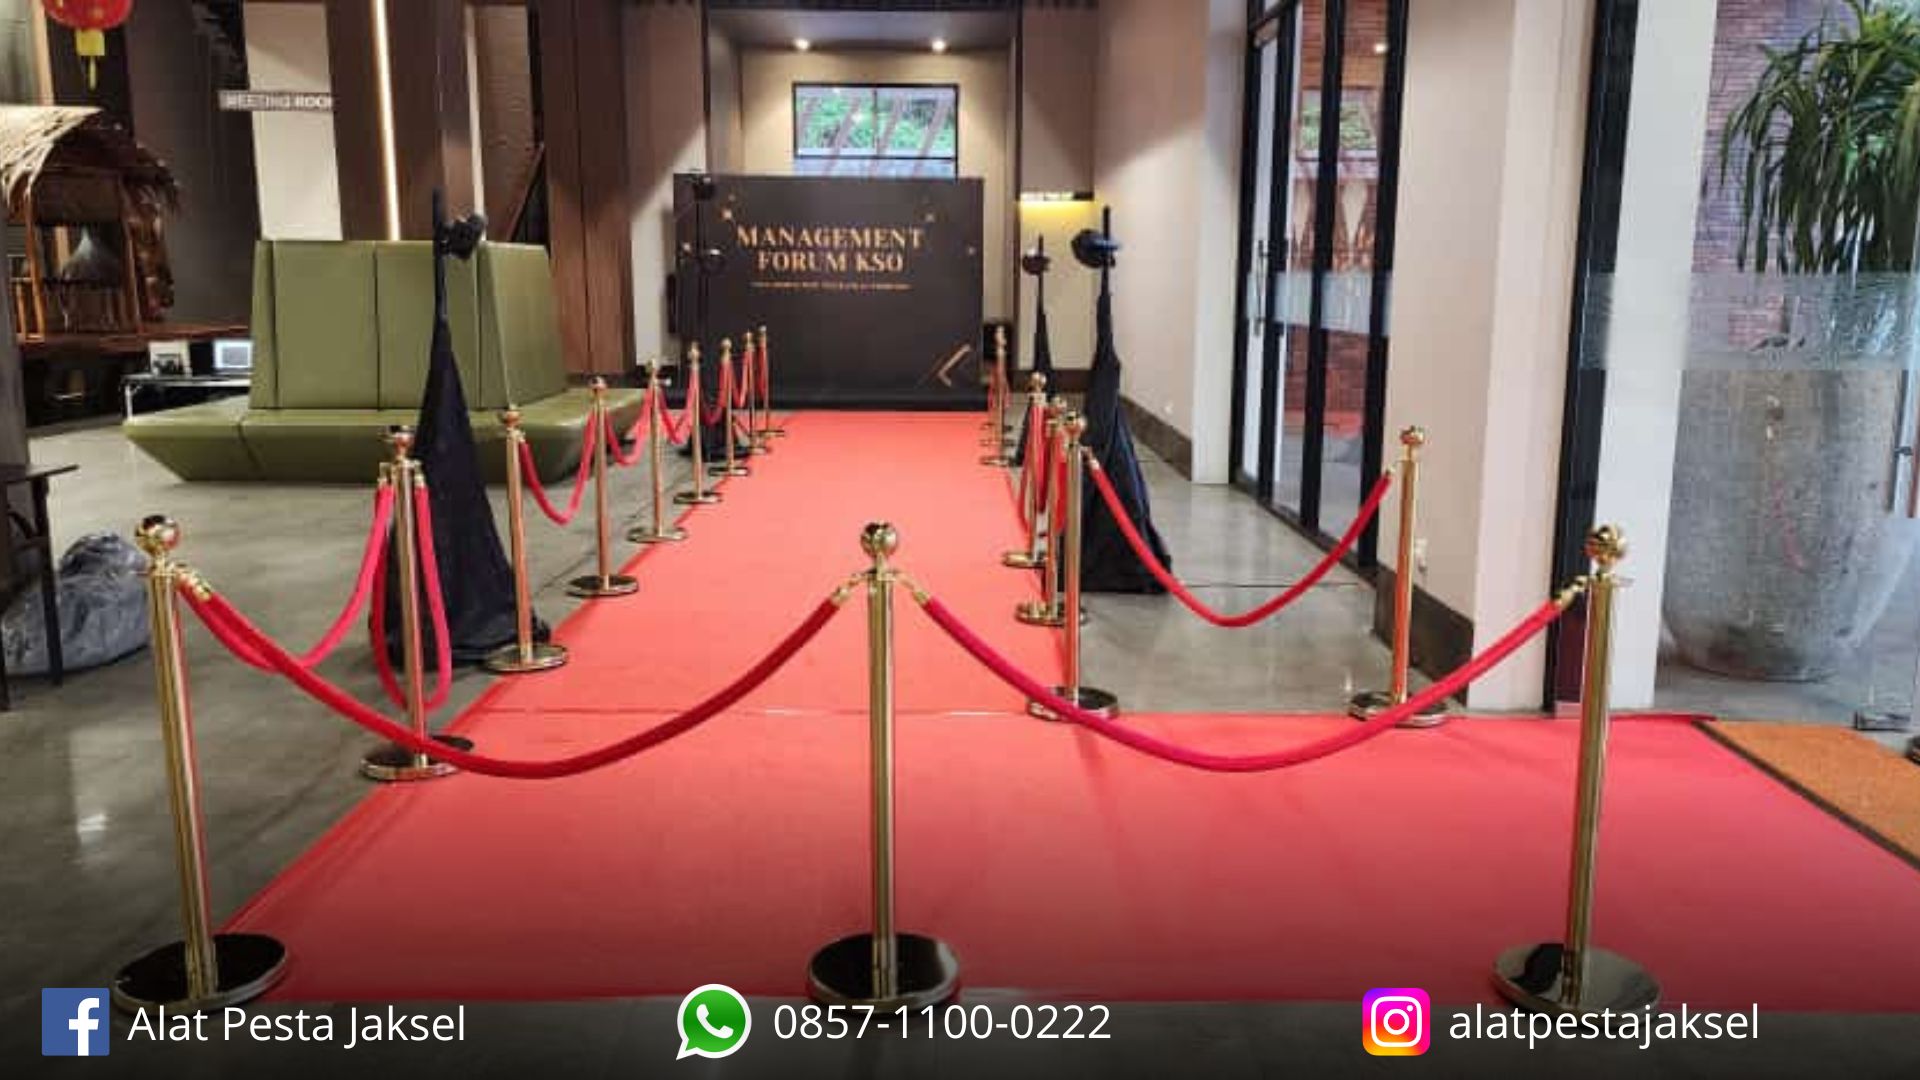 Pusat Sewa Karpet Jalan Merah Dan Tiang Antrian Gold Tali Merah Jakarta